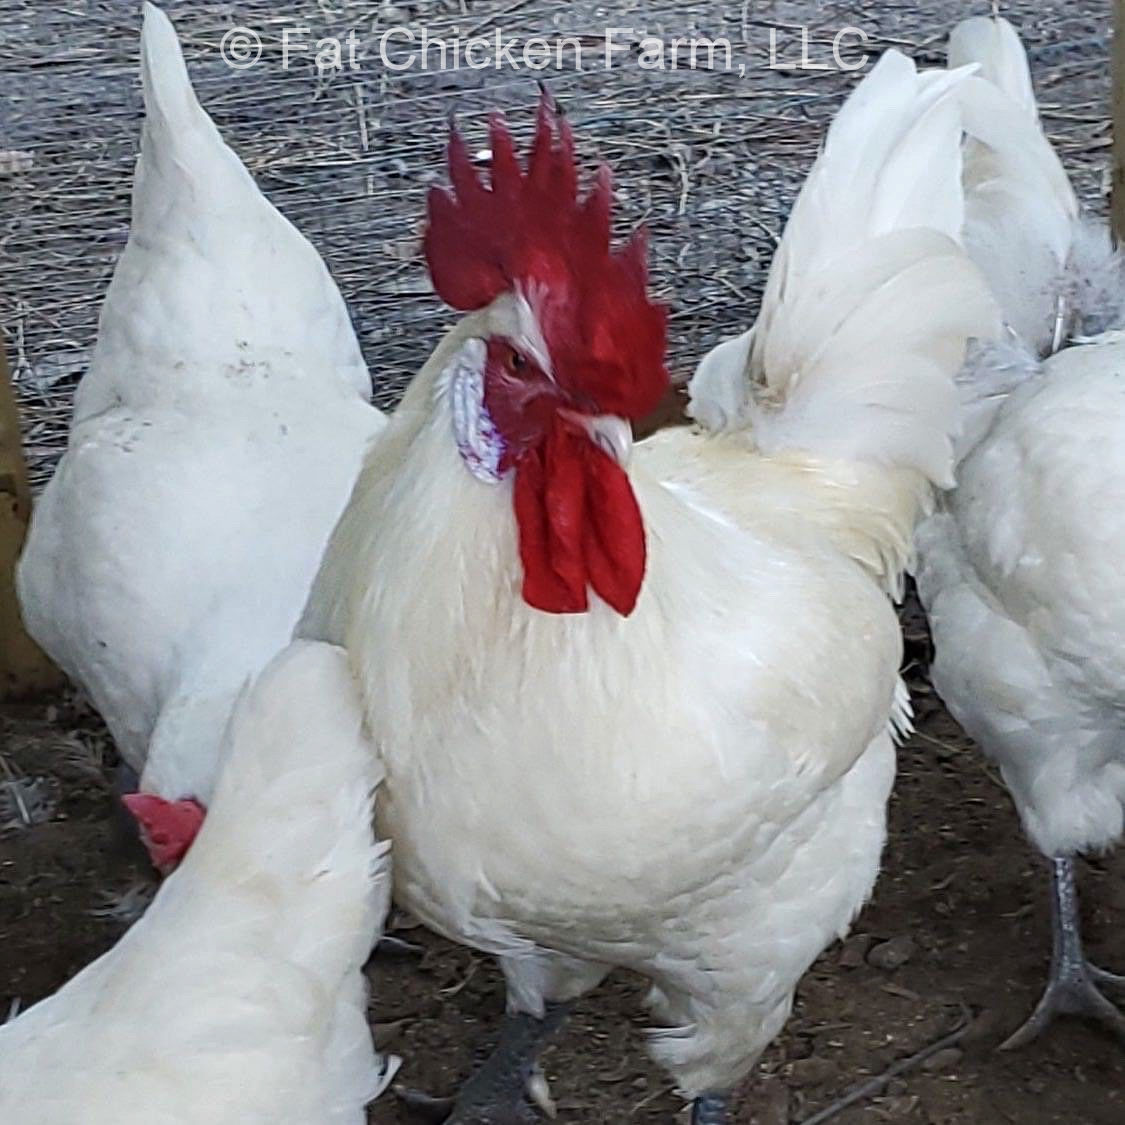 Fat Chicken Farm in North Carolina.